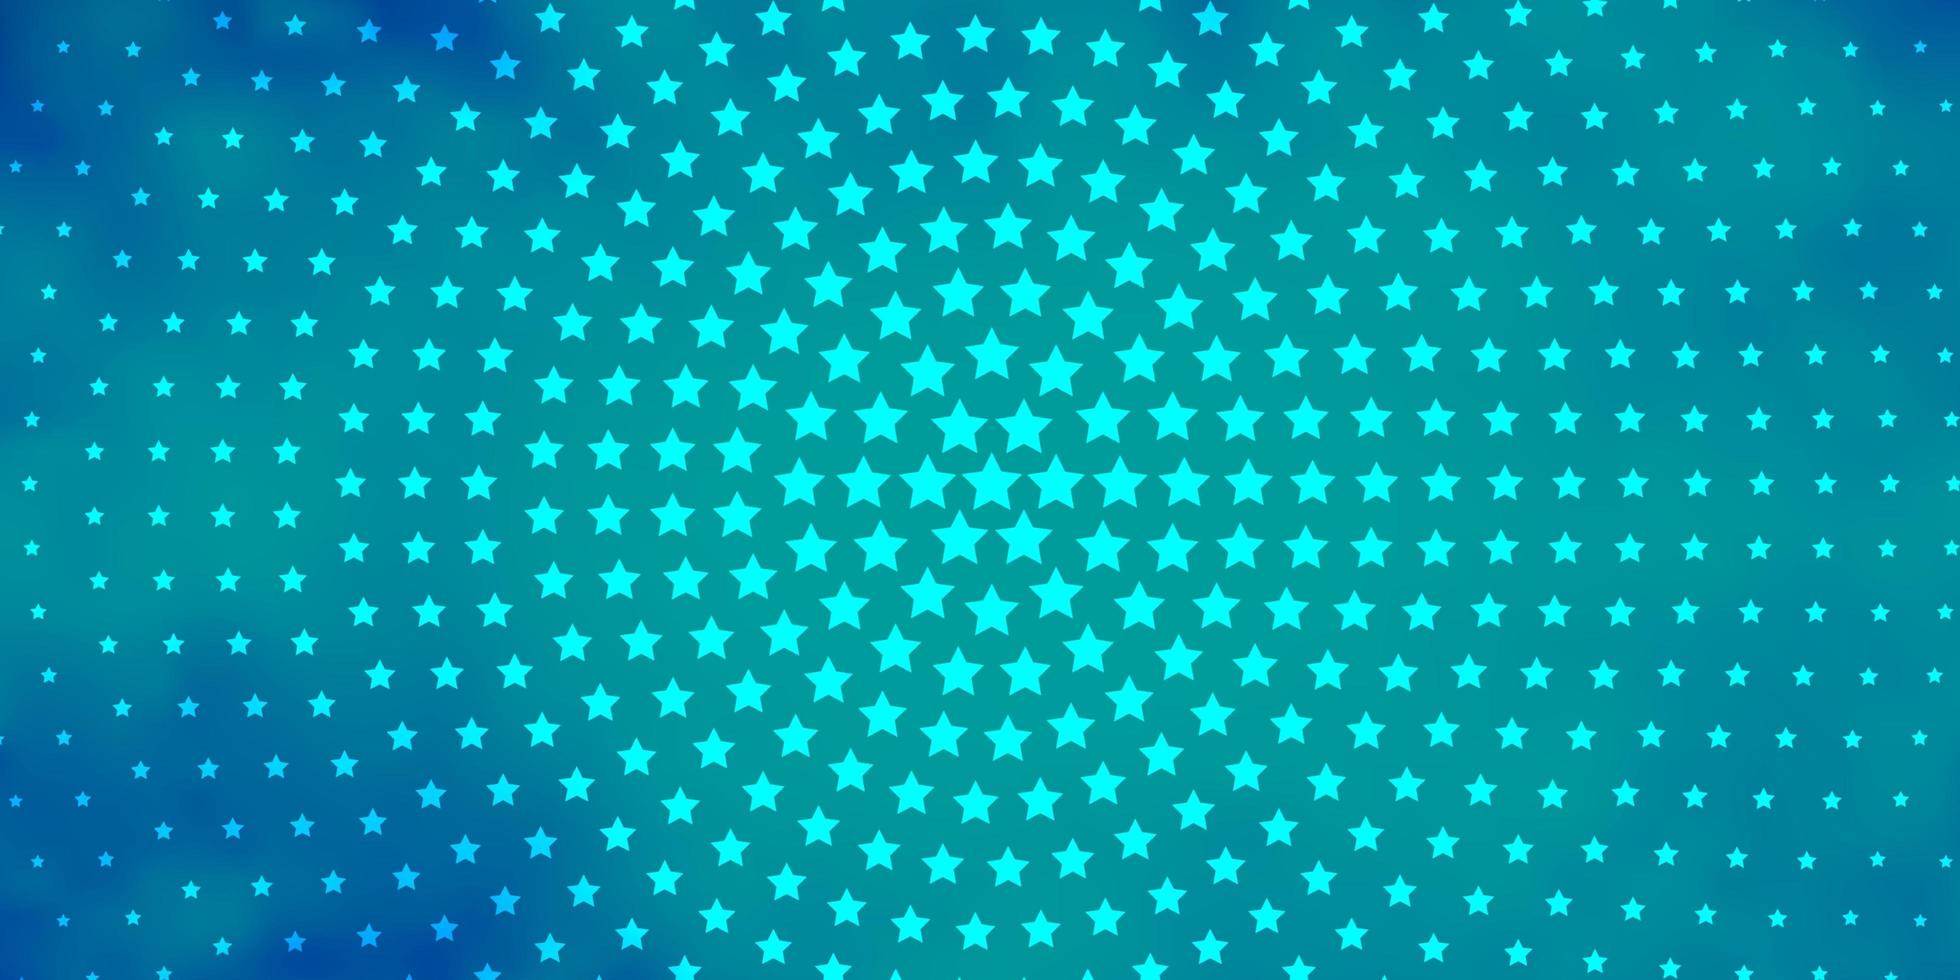 ljusblå vektorbakgrund med små och stora stjärnor. oskärpa dekorativ design i enkel stil med stjärnor. mönster för webbplatser, målsidor. vektor